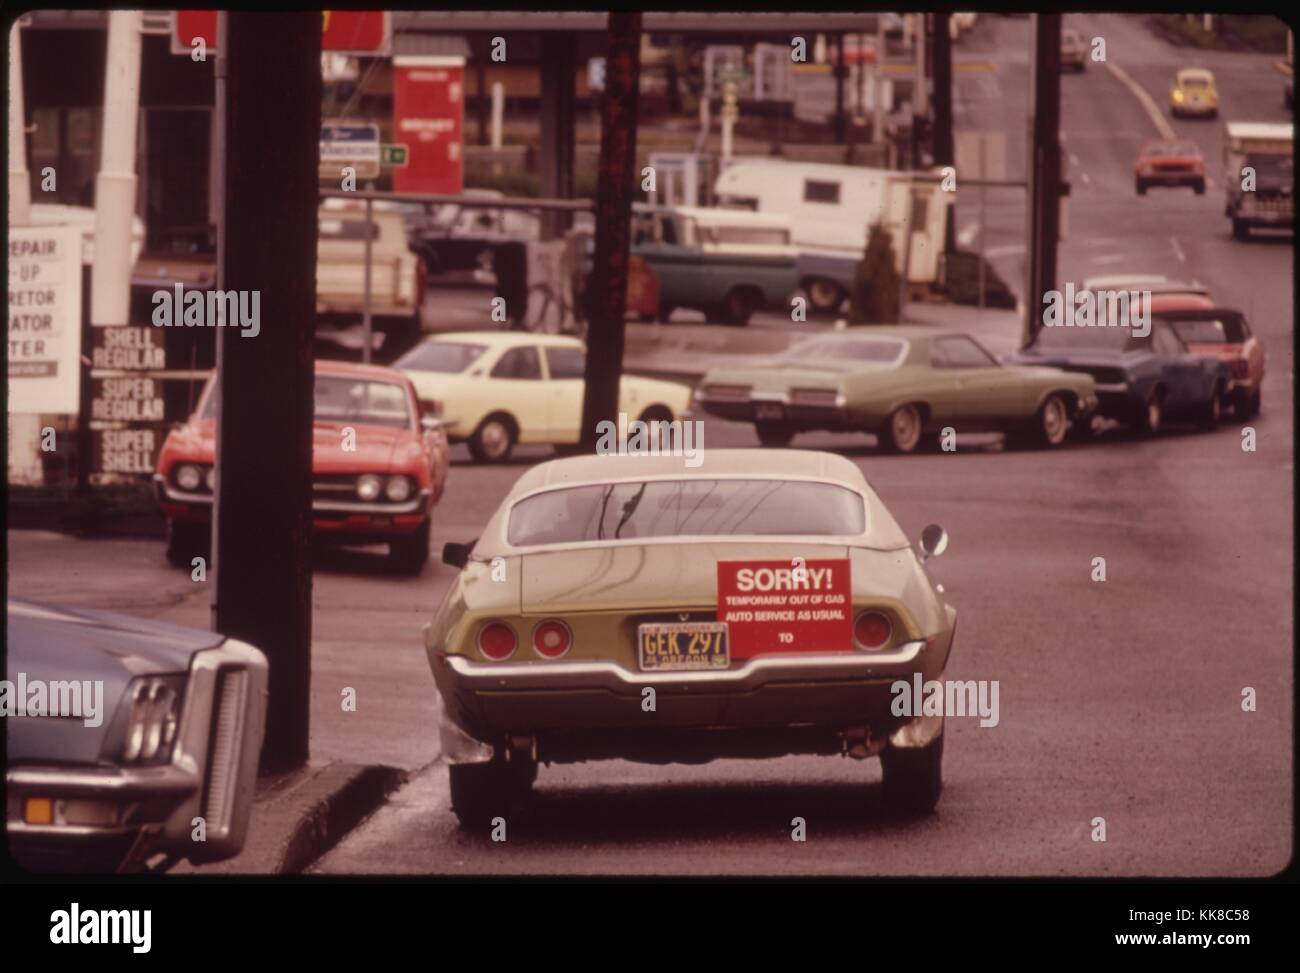 Nach Stunden im Benziner Linie einen Treiber an den Pumpen Kommen und finden Sie heraus, dass das Auto vor Ihm war die letzte Kraftstoff zu erhalten. So viele Stationen, wie dieses in Portland, begann mit einem "Sorry" Zeichen auf das letzte Auto Gas zu erhalten. Mit freundlicher Genehmigung der nationalen Archive, 1973. Stockfoto